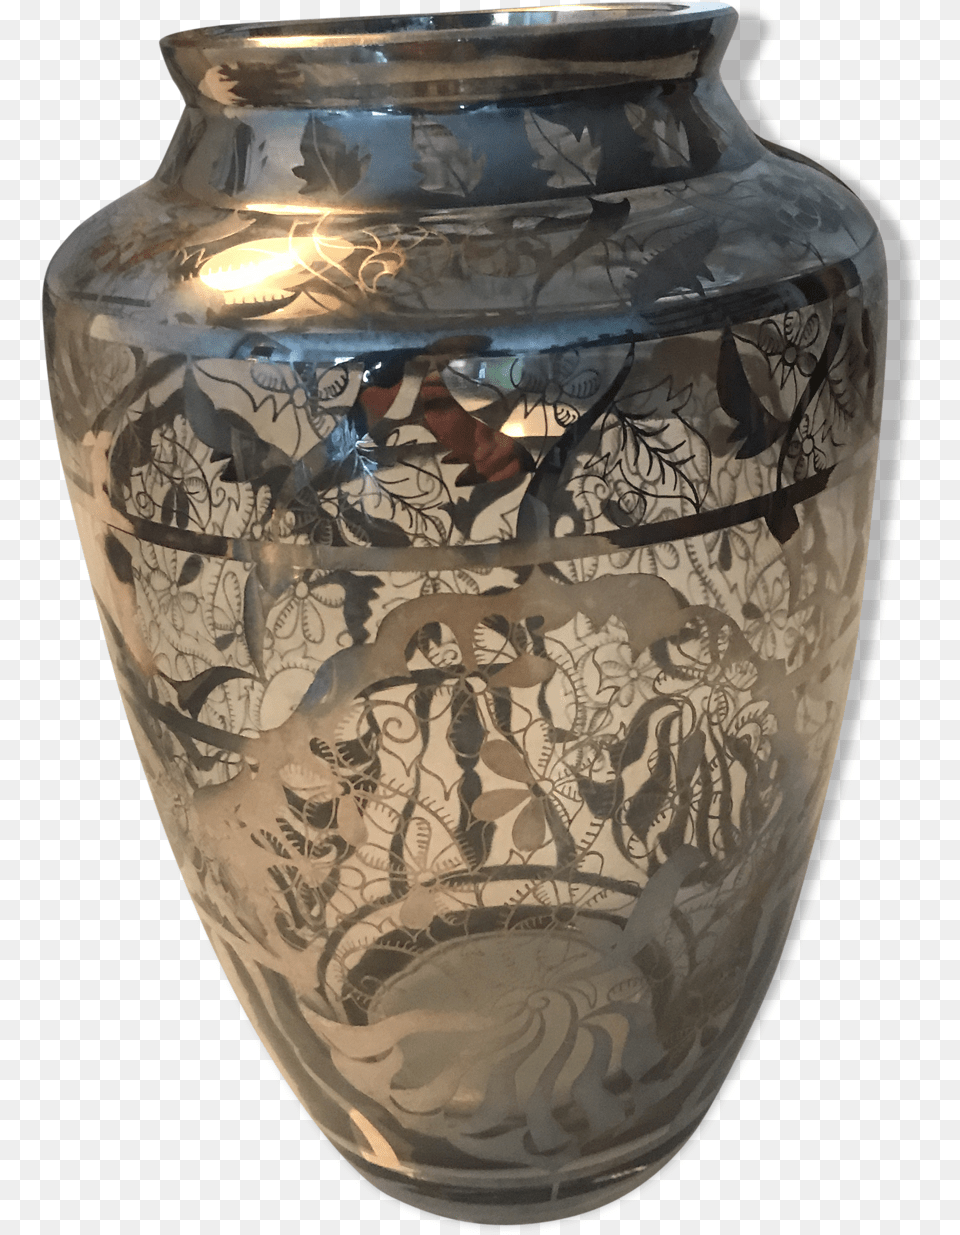 Holy Grail Vasesrc Https Vase, Jar, Pottery, Urn Png